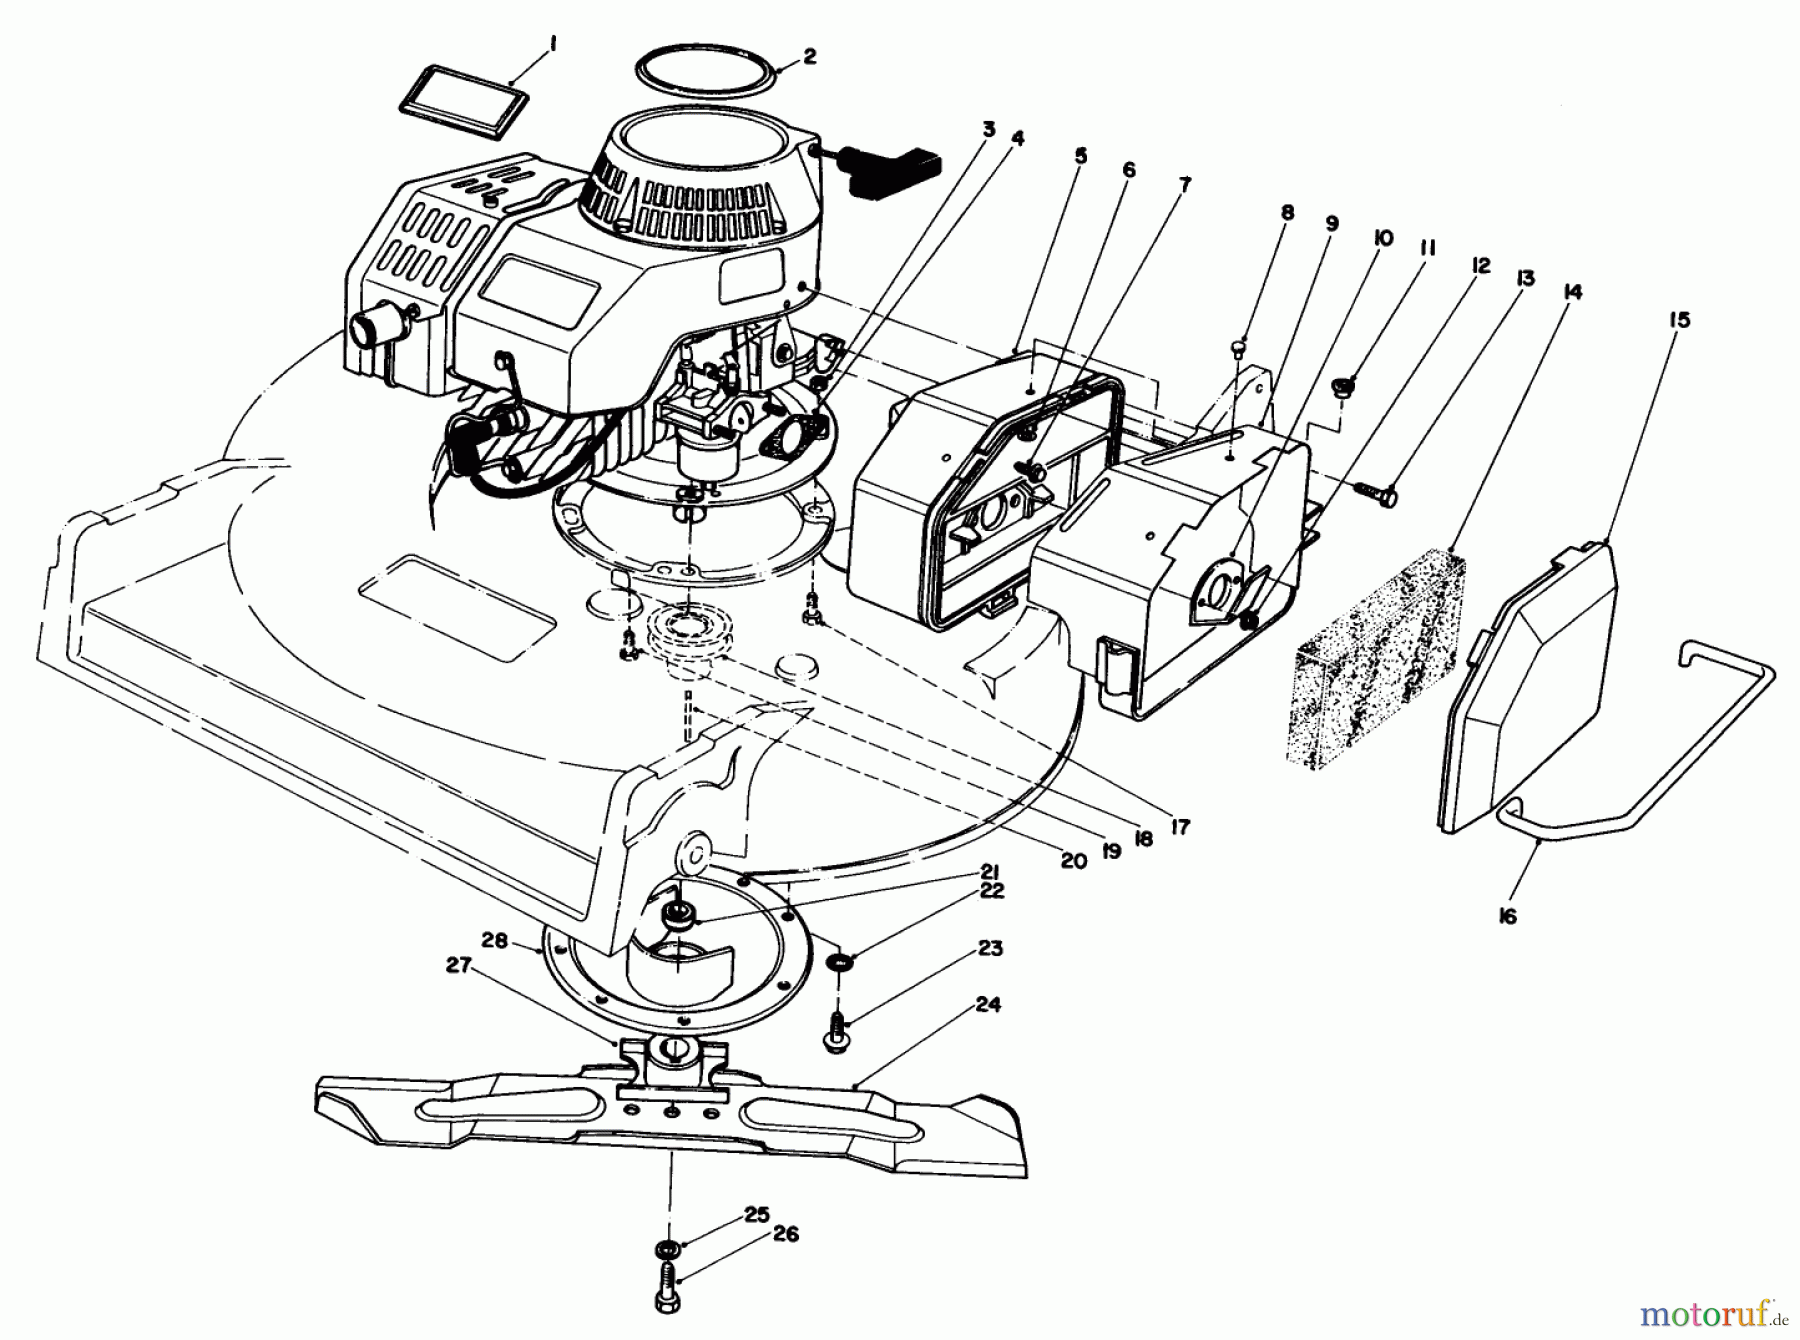  Toro Neu Mowers, Walk-Behind Seite 2 22030 - Toro Lawnmower, 1984 (4000001-4999999) ENGINE ASSEMBLY (MODEL 22035)